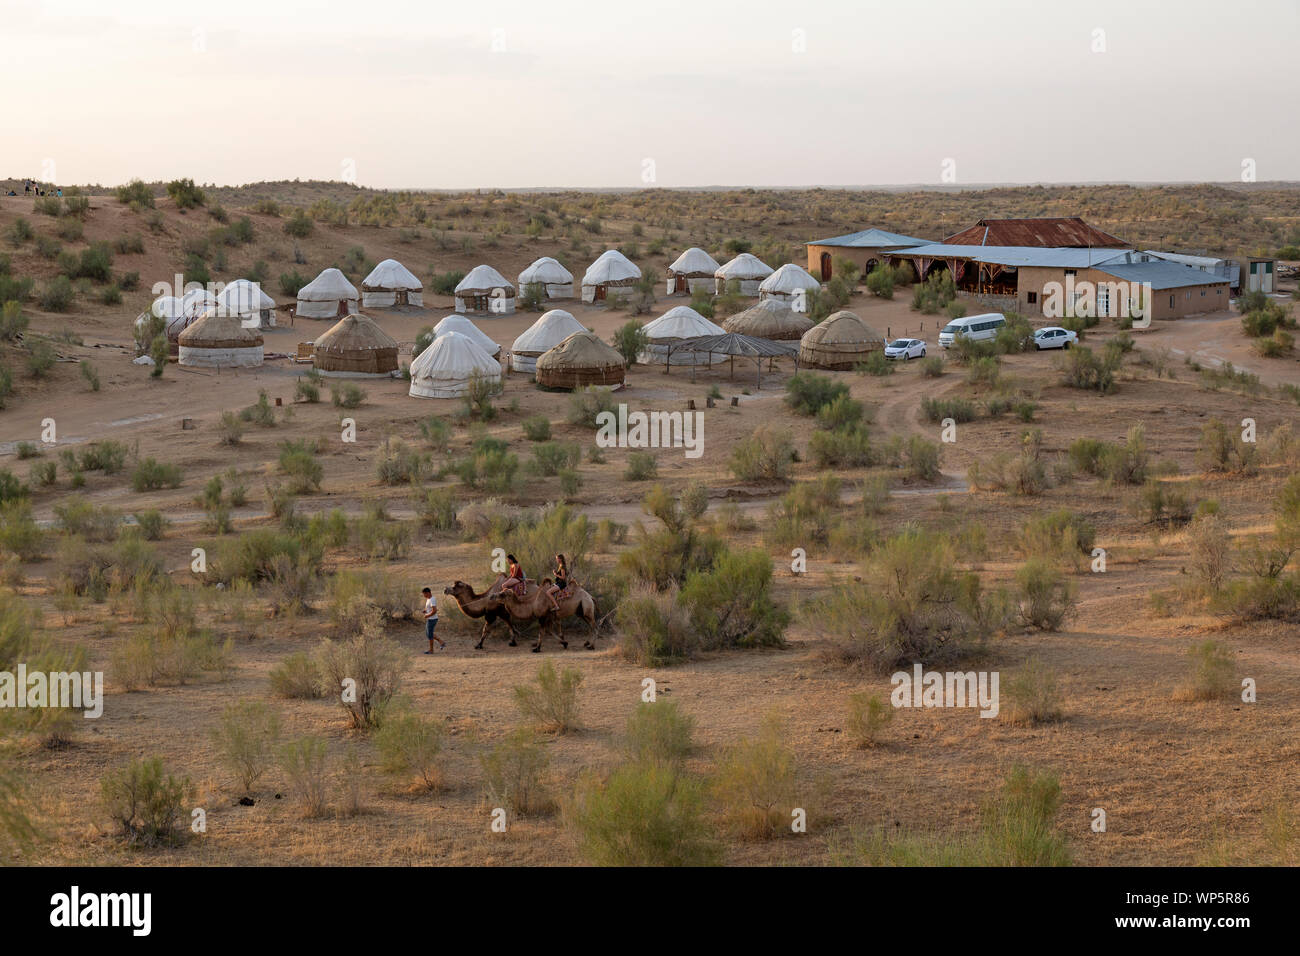 Deux touristes menée sur des chameaux autour du camp de Yourte à l'Nurataou Projet écotouristique près de la ville de Nurata en Ouzbékistan. Banque D'Images